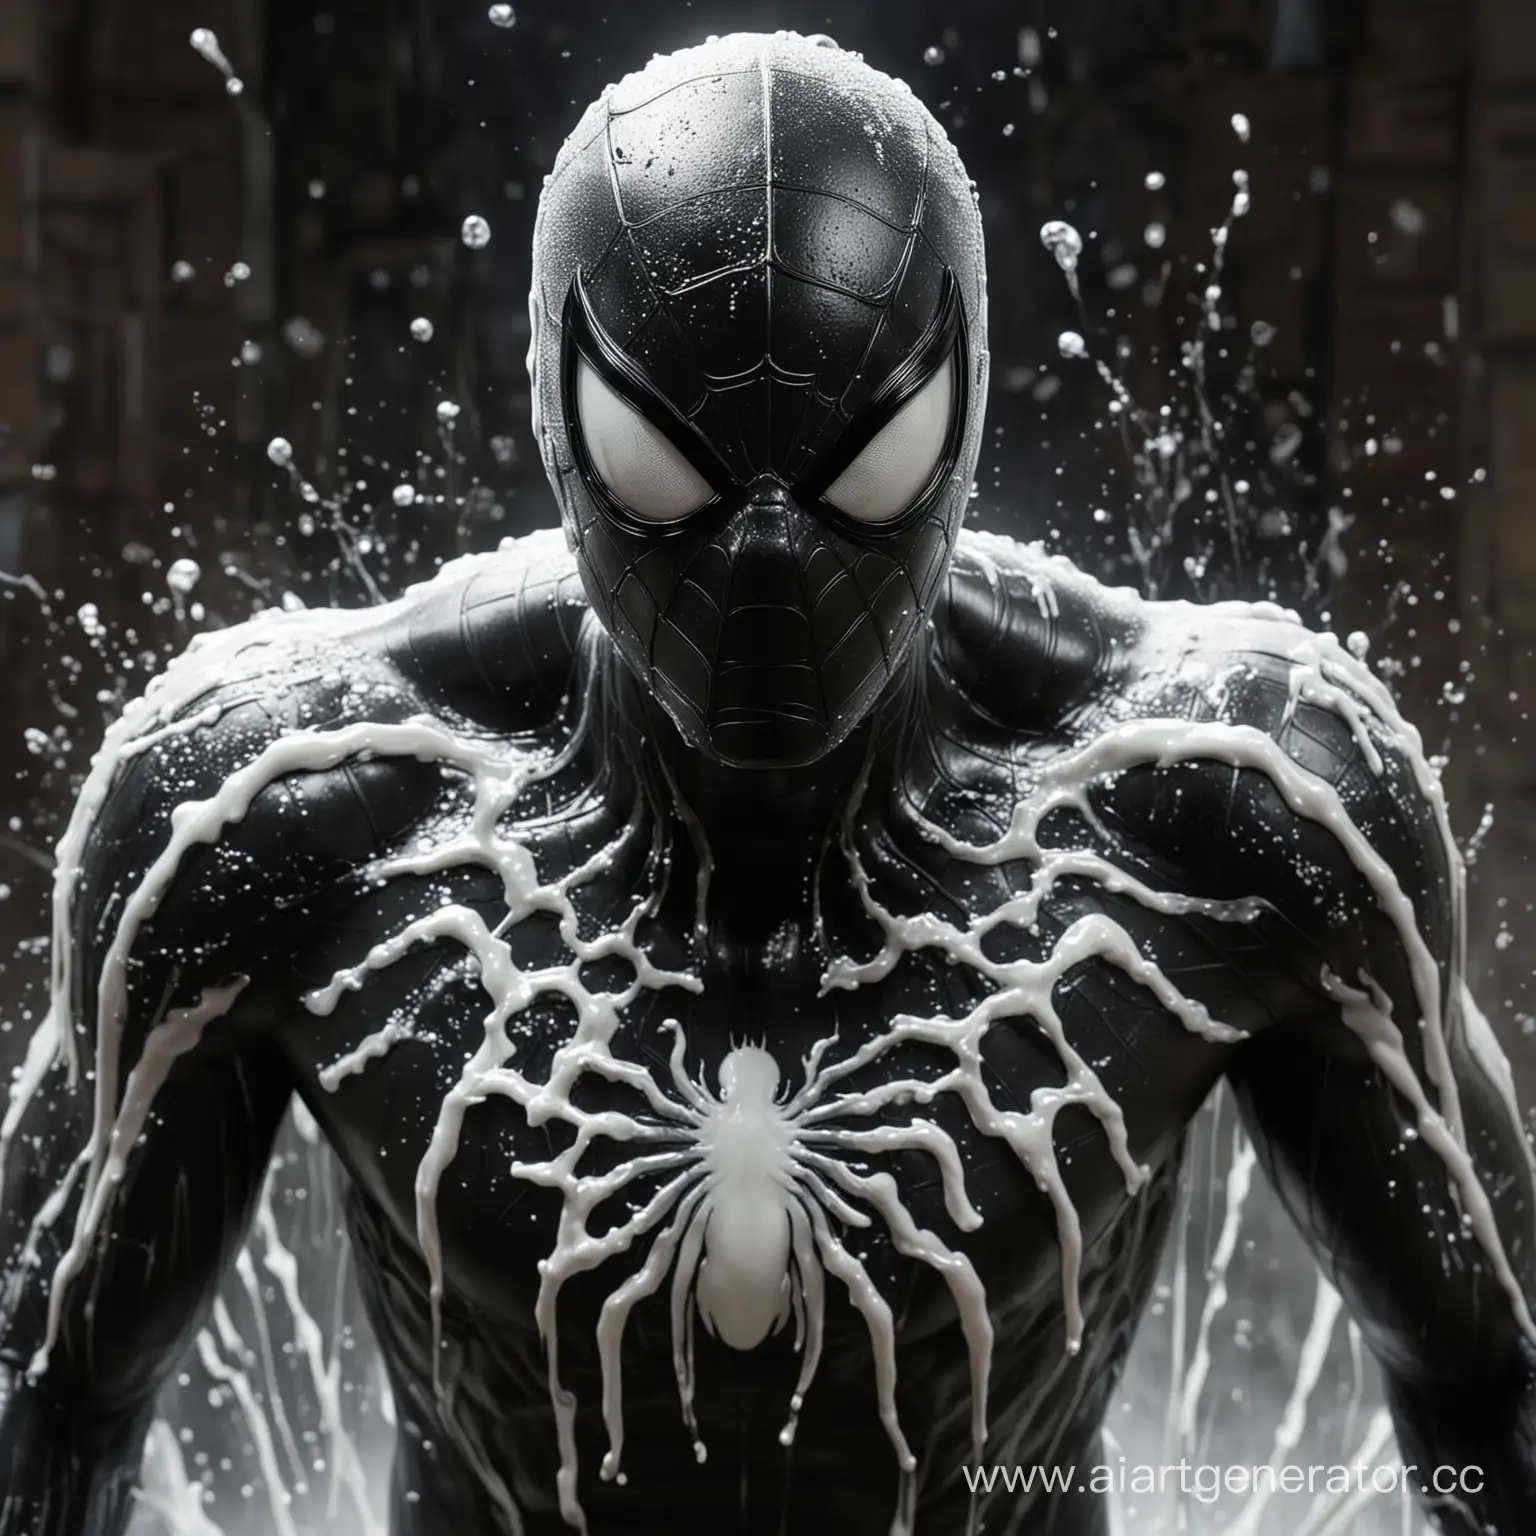 蜘蛛侠3，黑色的蜘蛛侠恶霸邪欲的眼神，身上残流着白色的液体